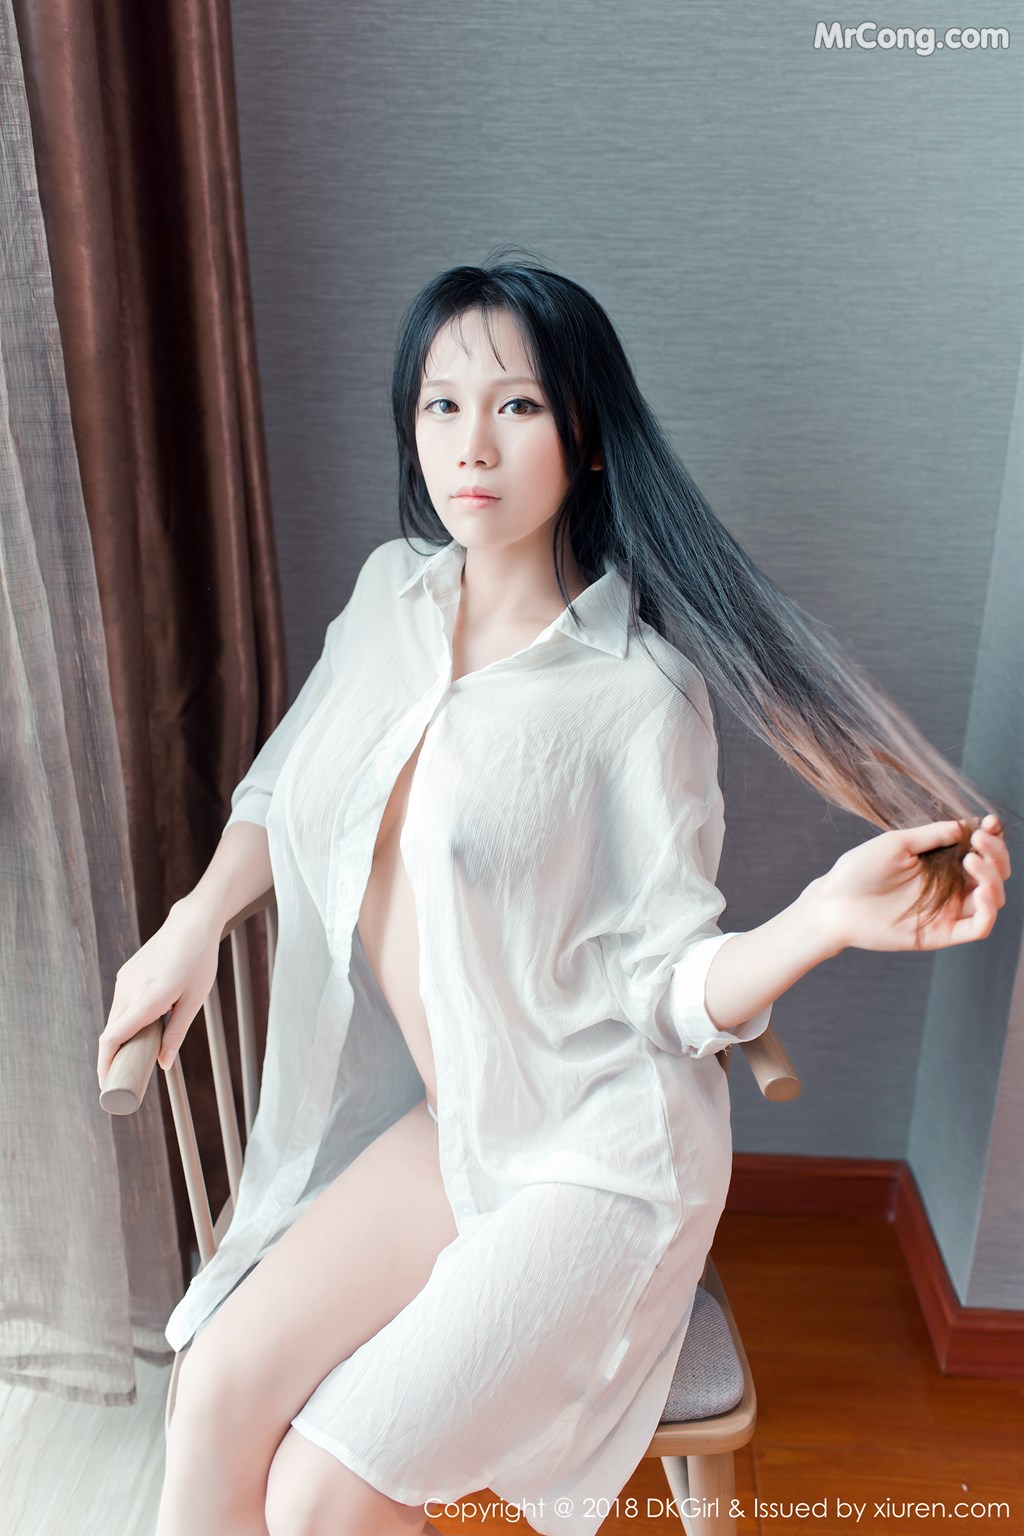 DKGirl Vol.070: Model Li Ke Ke (李 可可) (49 photos)